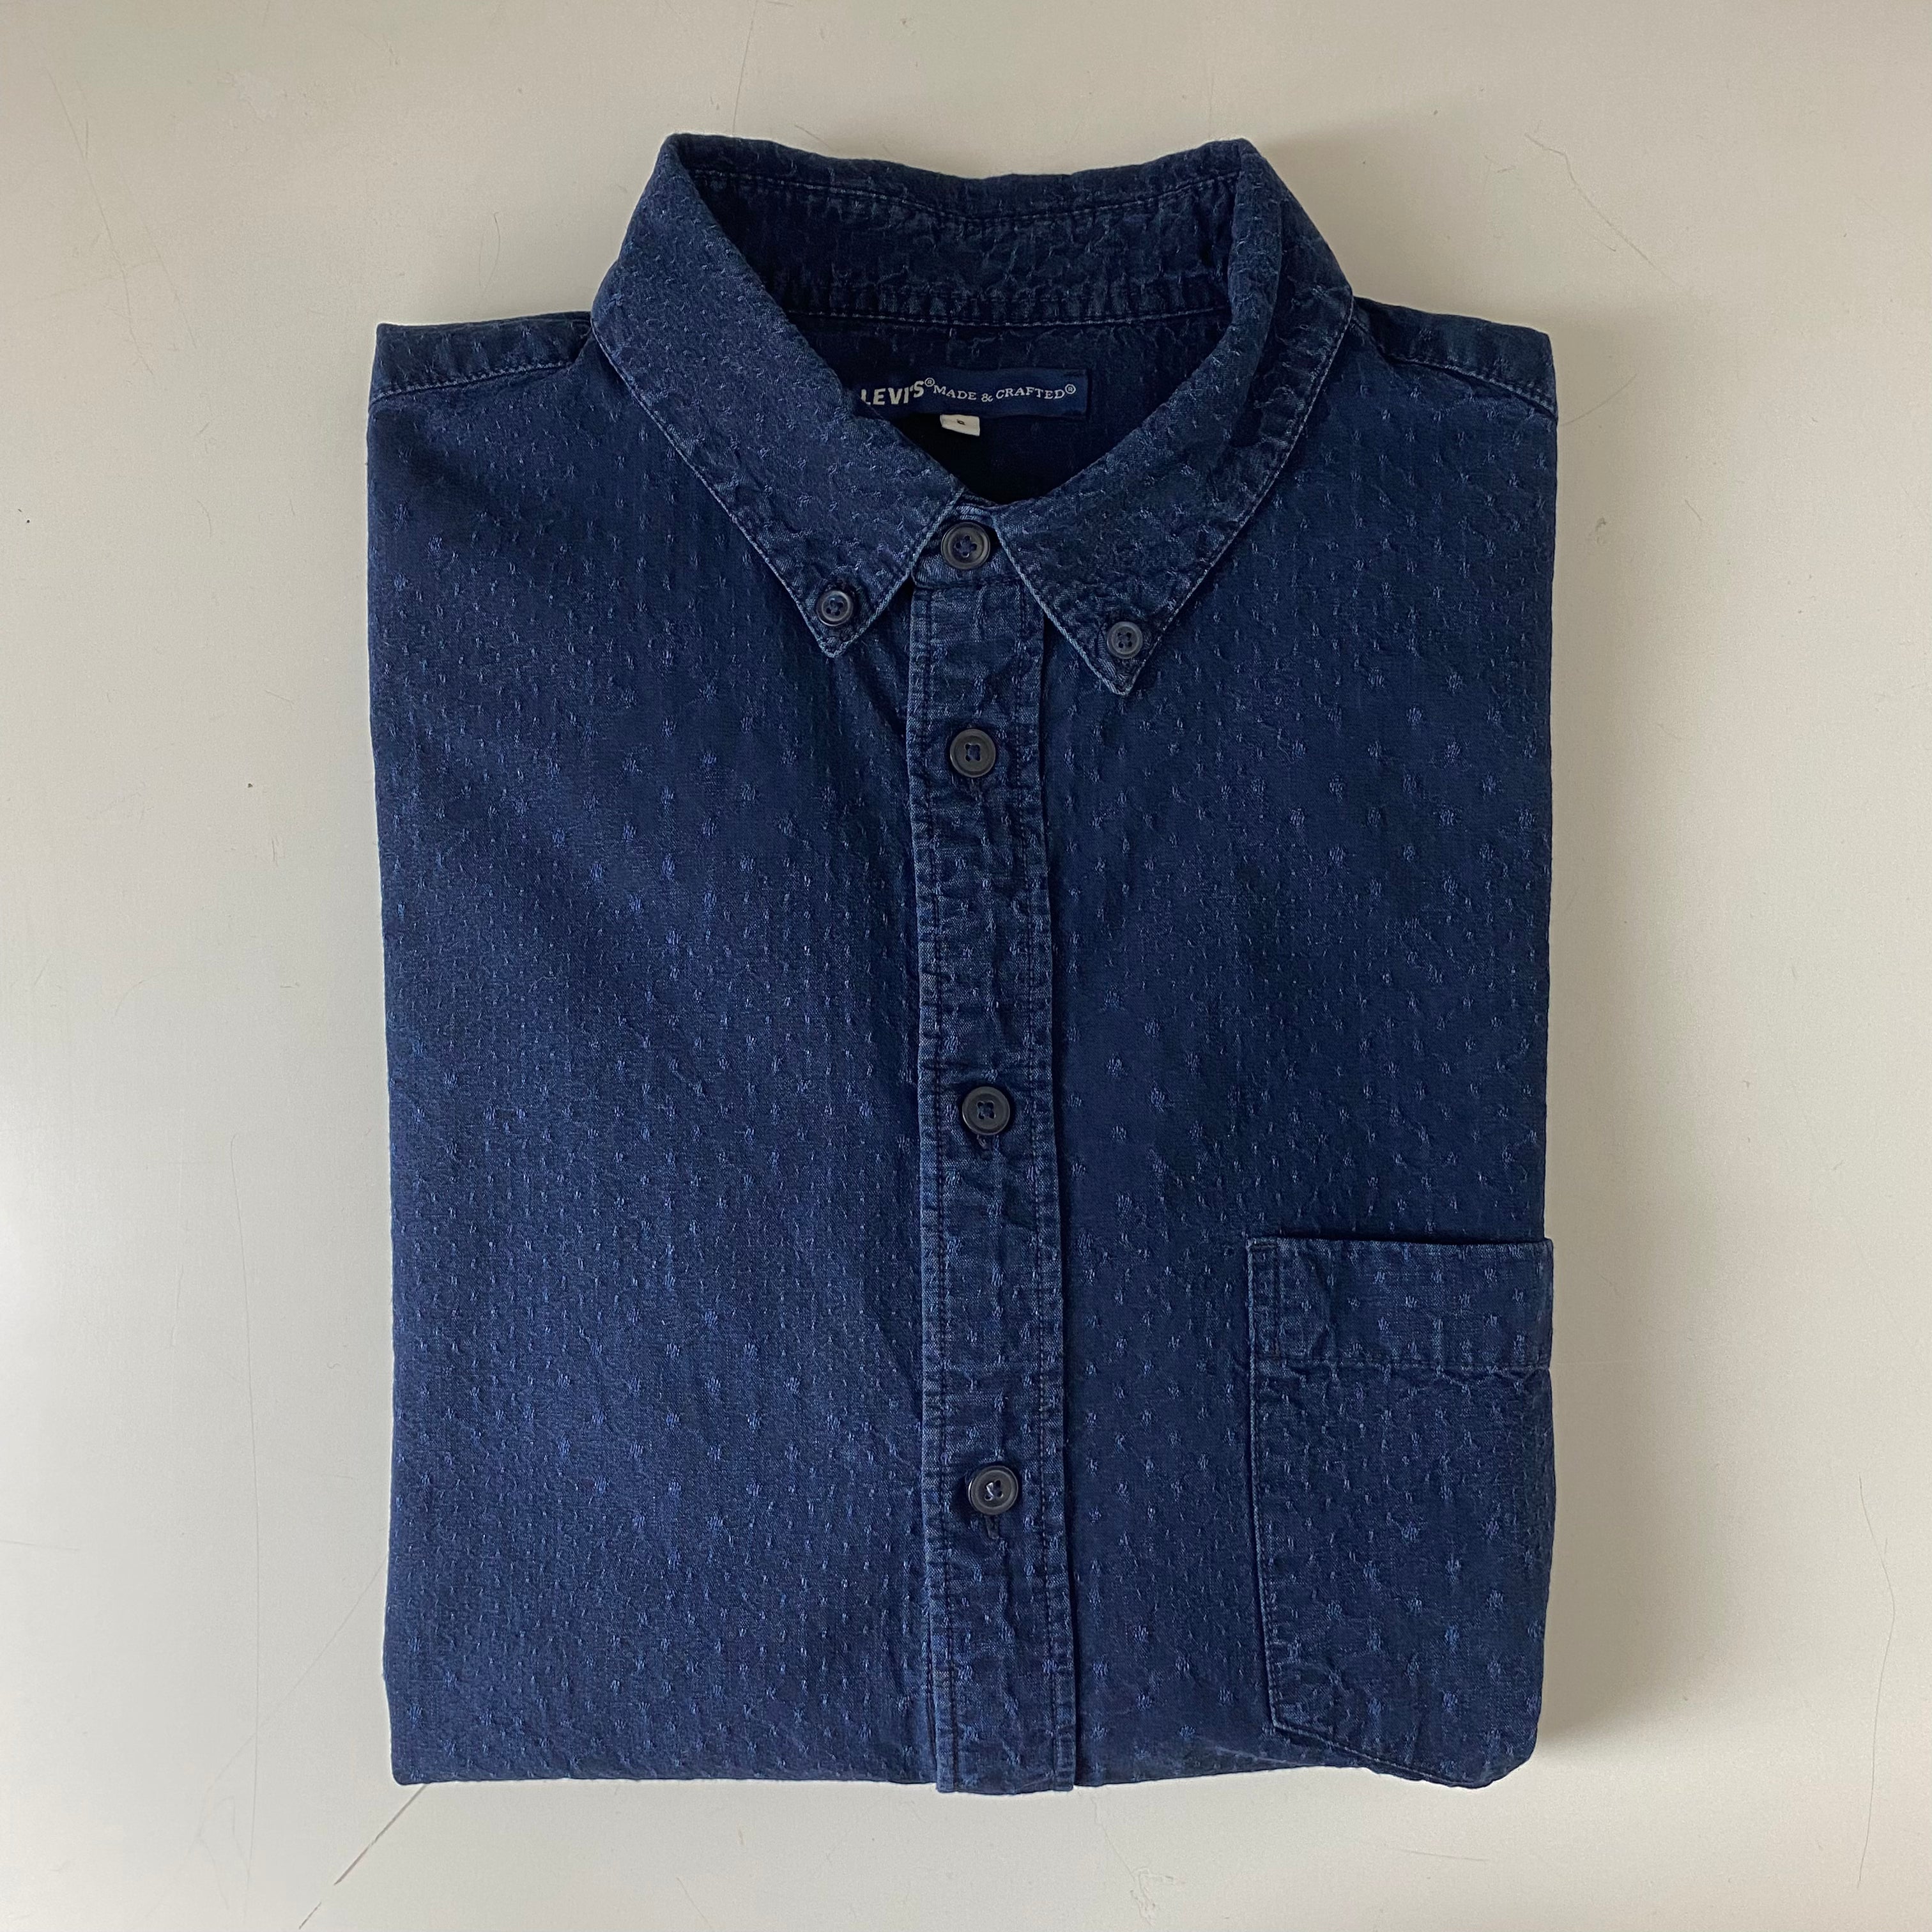 Standard Shirt in Blue  - S